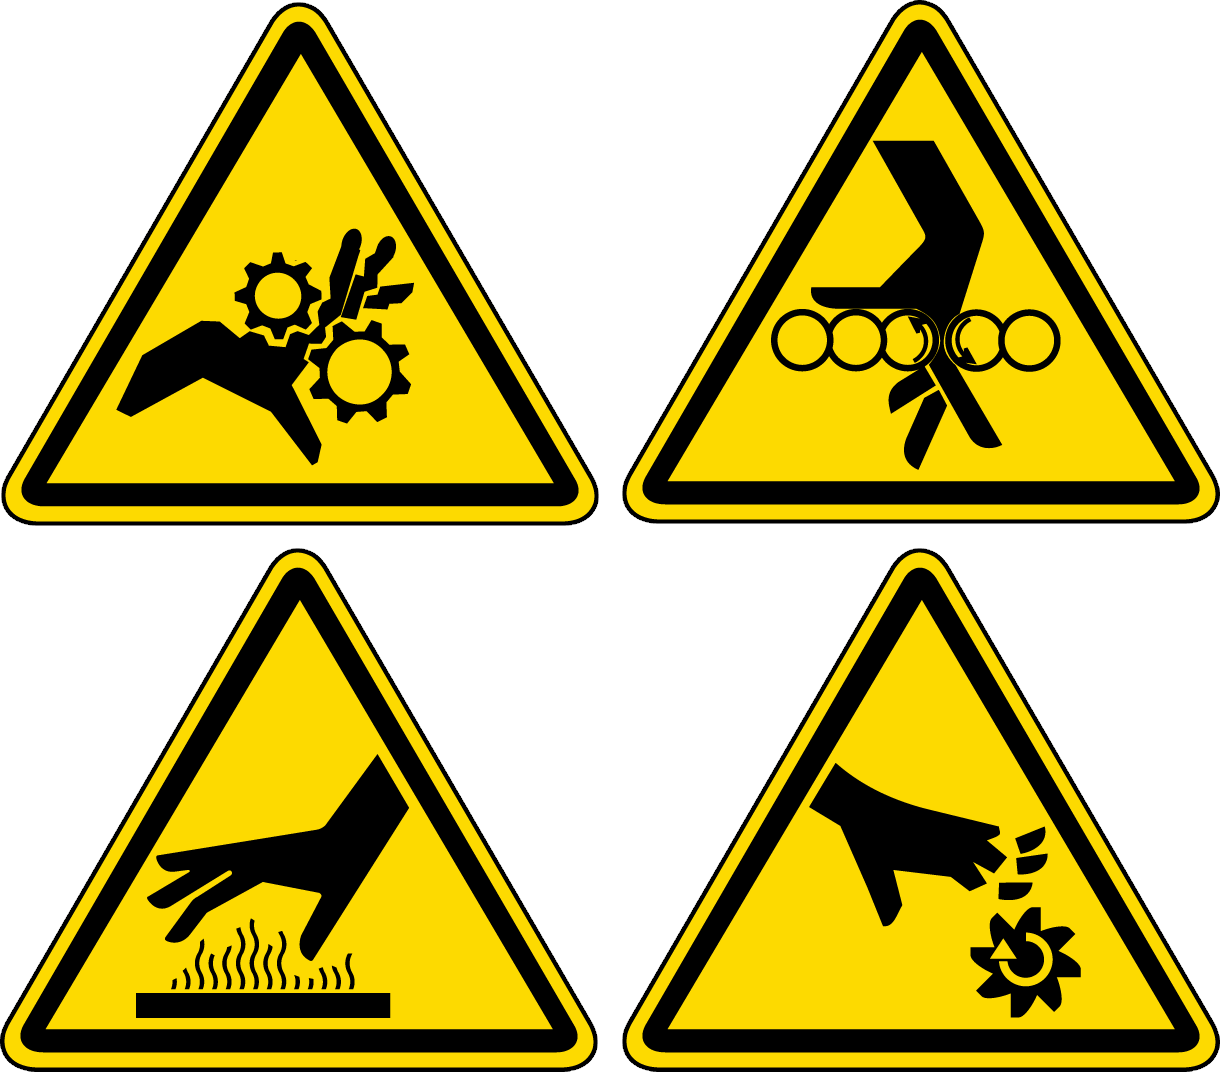 Safety symbols